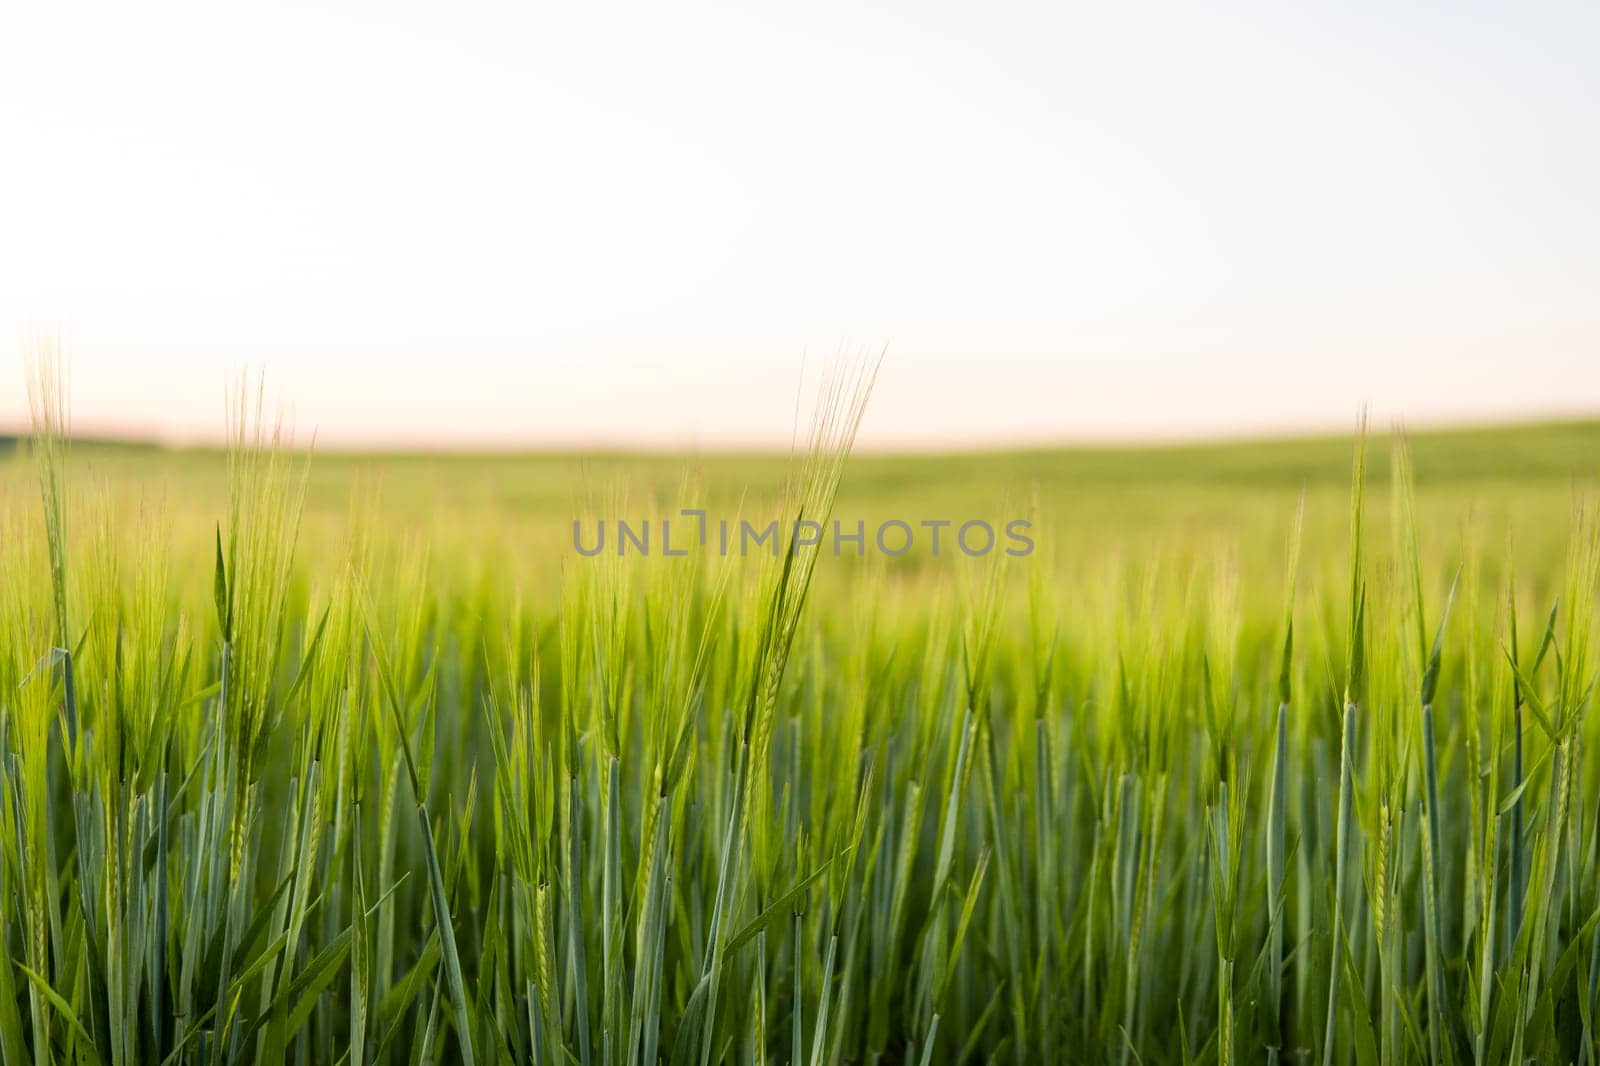 Barley field against the blue sky. Ripening ears of barley field and sunlight. Crops field. Field landscape